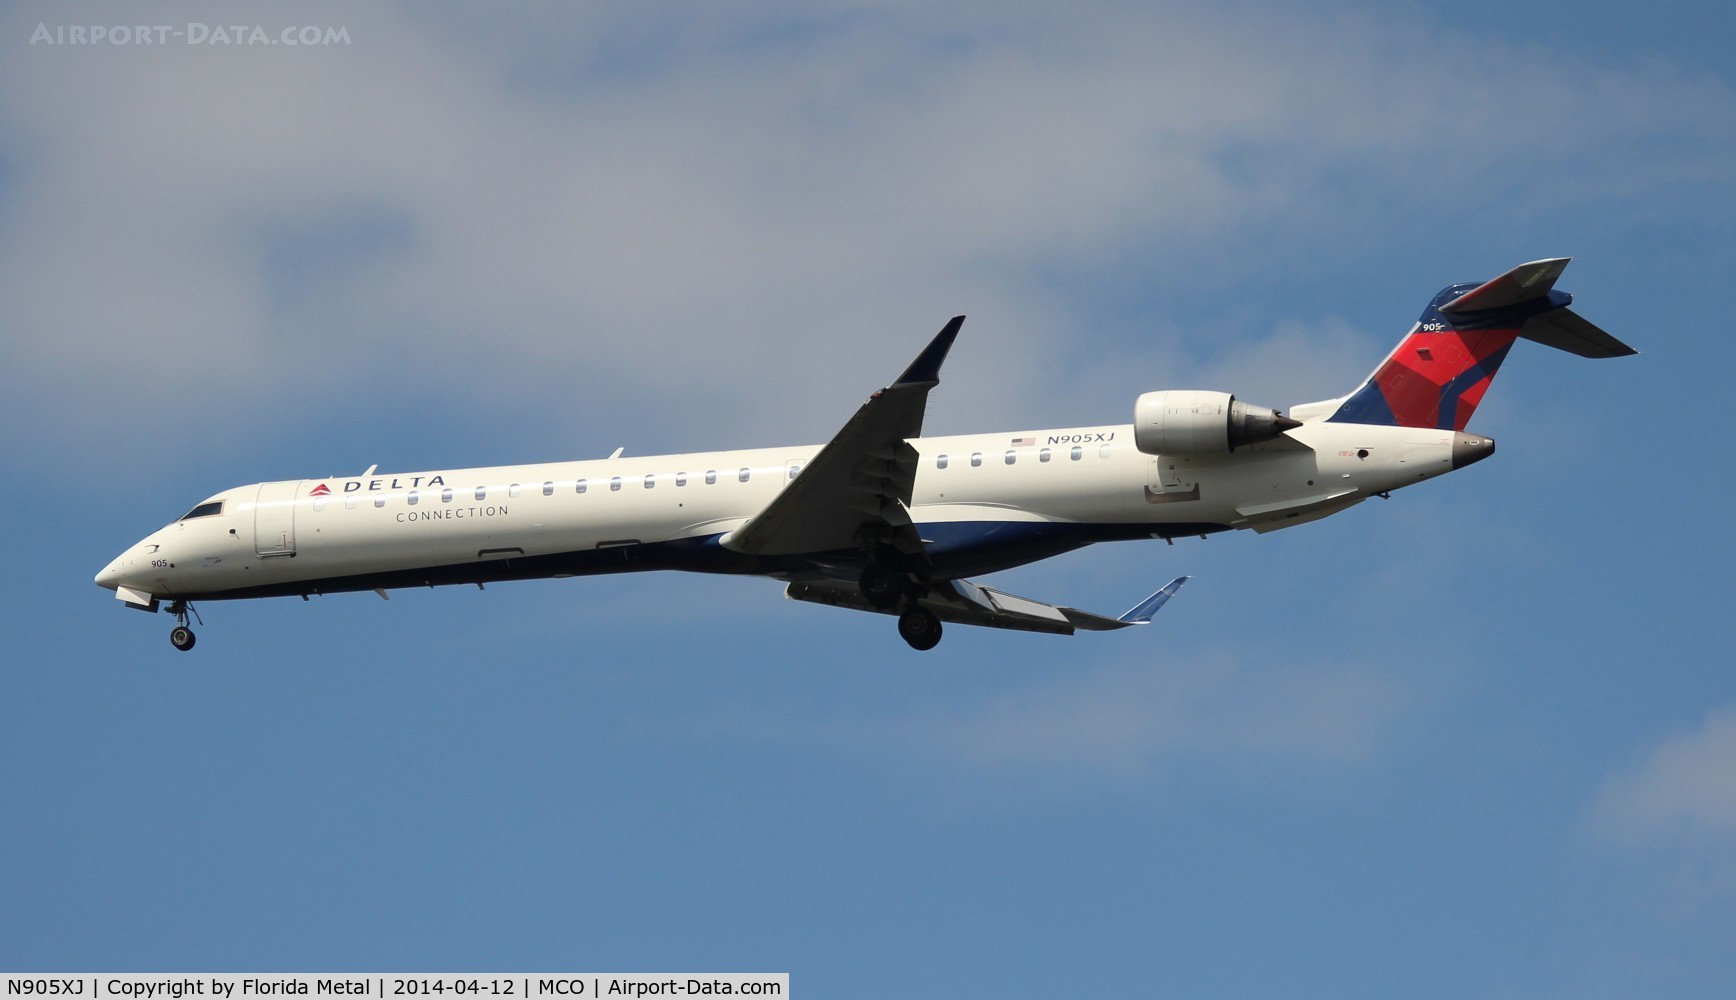 N905XJ, 2007 Bombardier CRJ-900 (CL-600-2D24) C/N 15137, Delta Connection